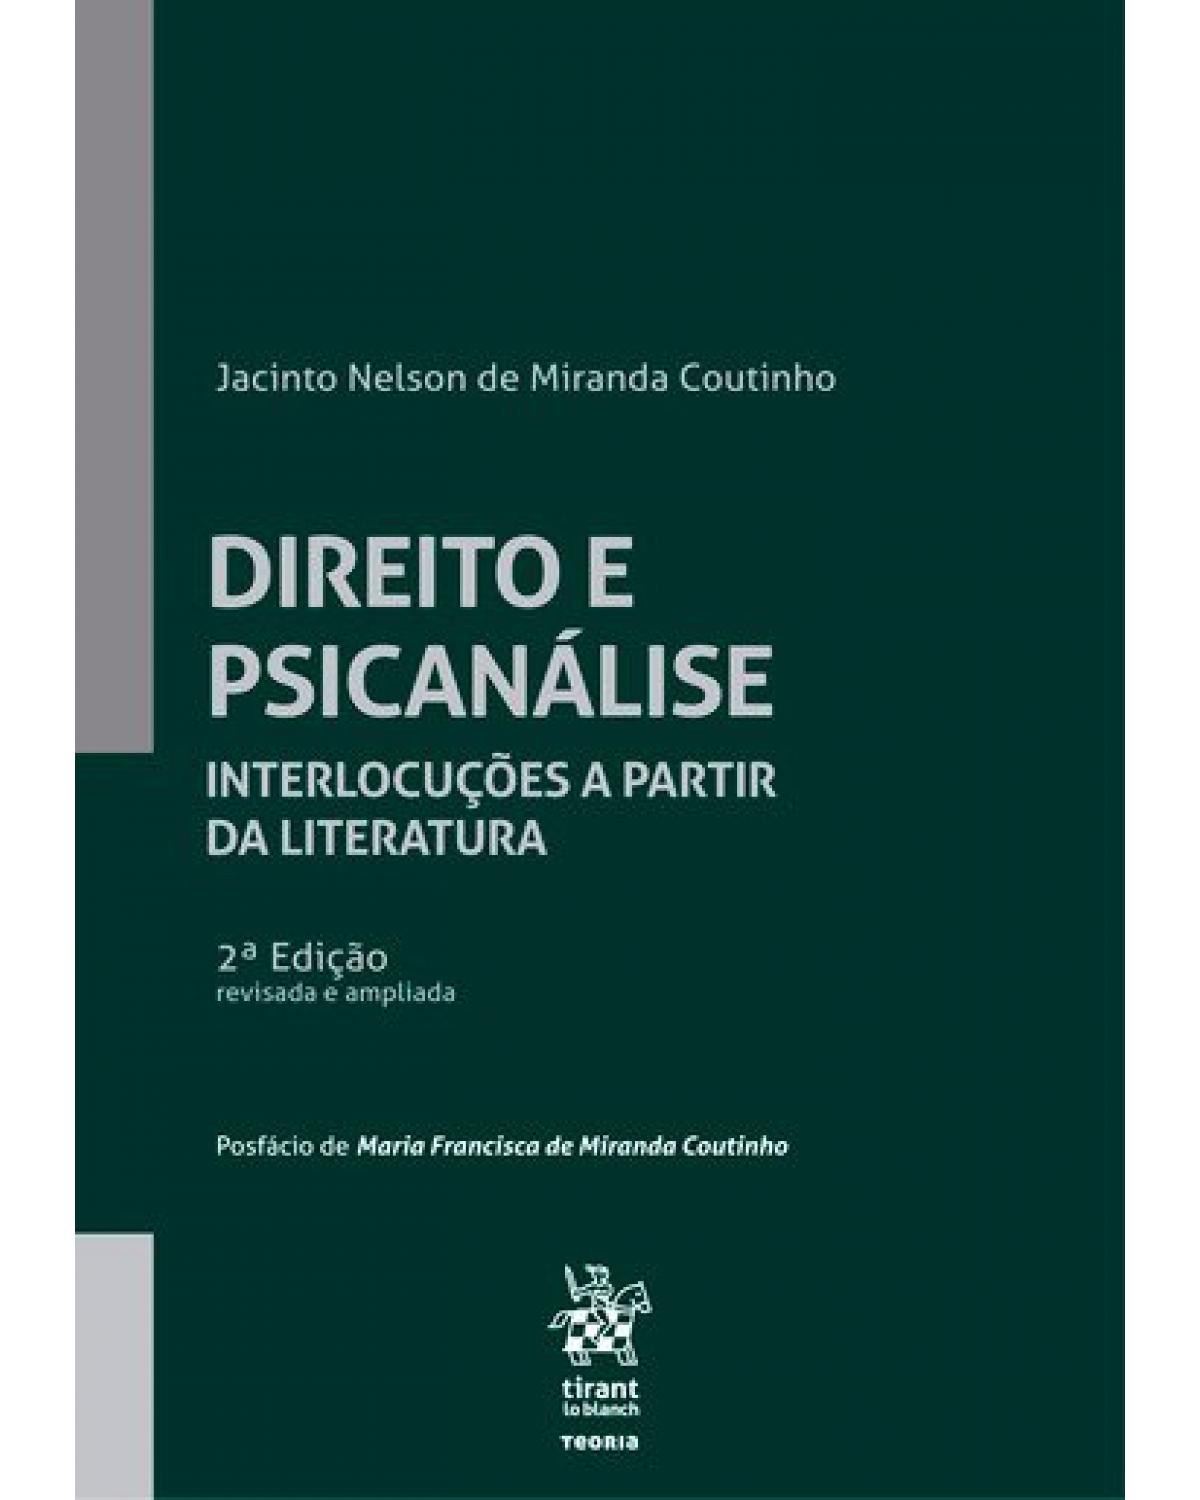 Direito e psicanálise - interlocuções a partir da literatura - 2ª Edição | 2018